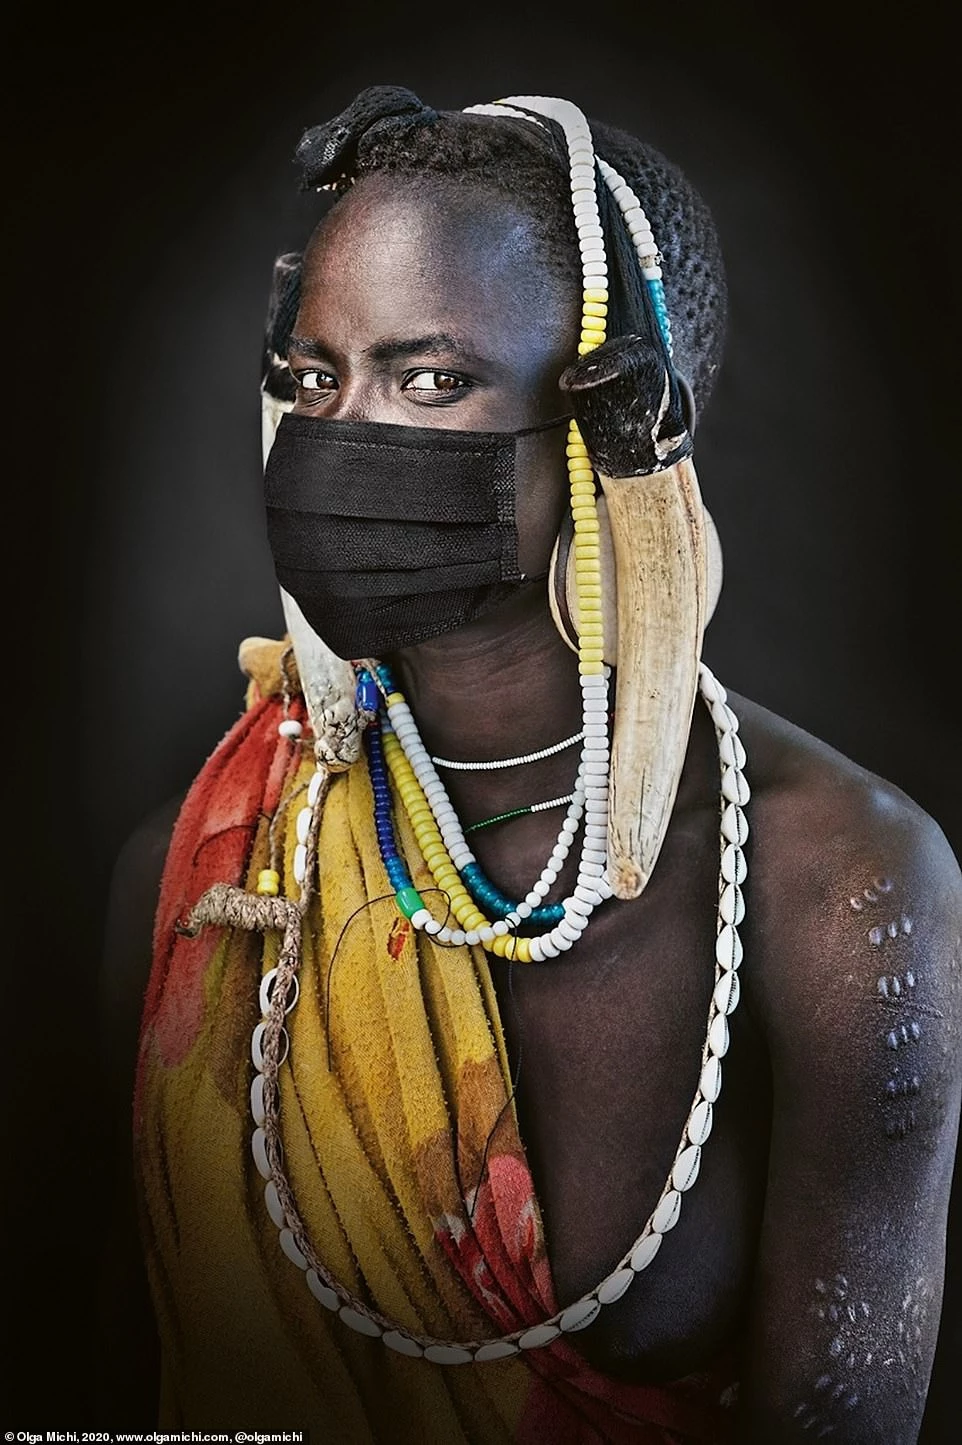 Người đàn ông thuộc bộ lạc Mursi ở thung lũng Omo của Ethiopia. Anh đeo chiếc khẩu trang một cách kiêu hãnh và tự tin như những món đồ trang sức bình thường trong tình trạng đại dịch Covid-19 lan tràn khắp thế giới.